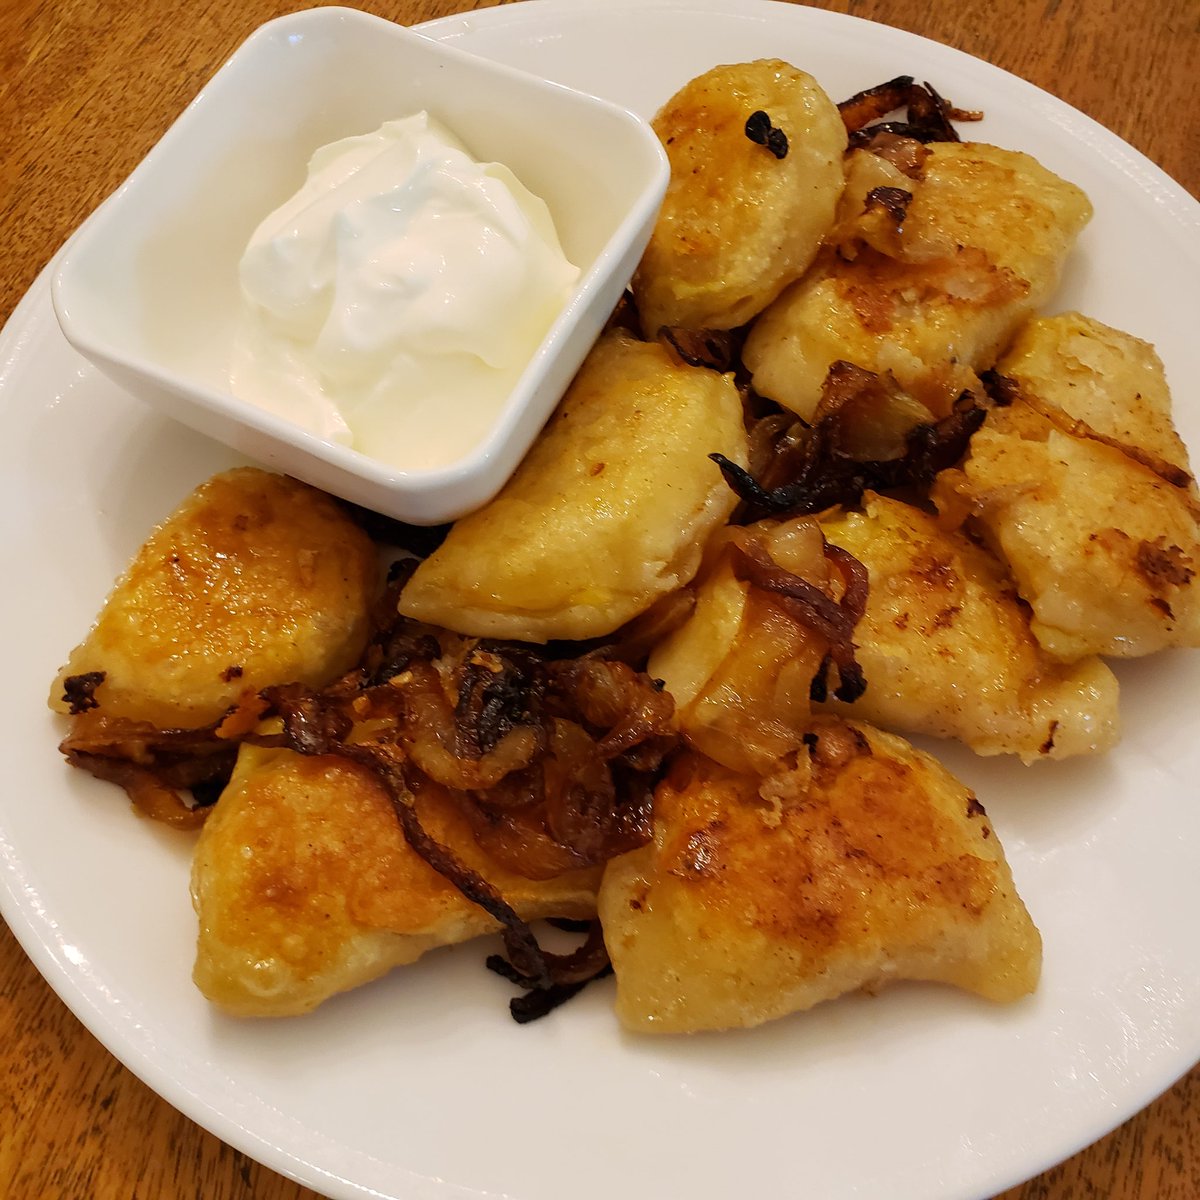 Pierogi stuffed with potato and cheese. #kitchenexperiments #twittersupperclub